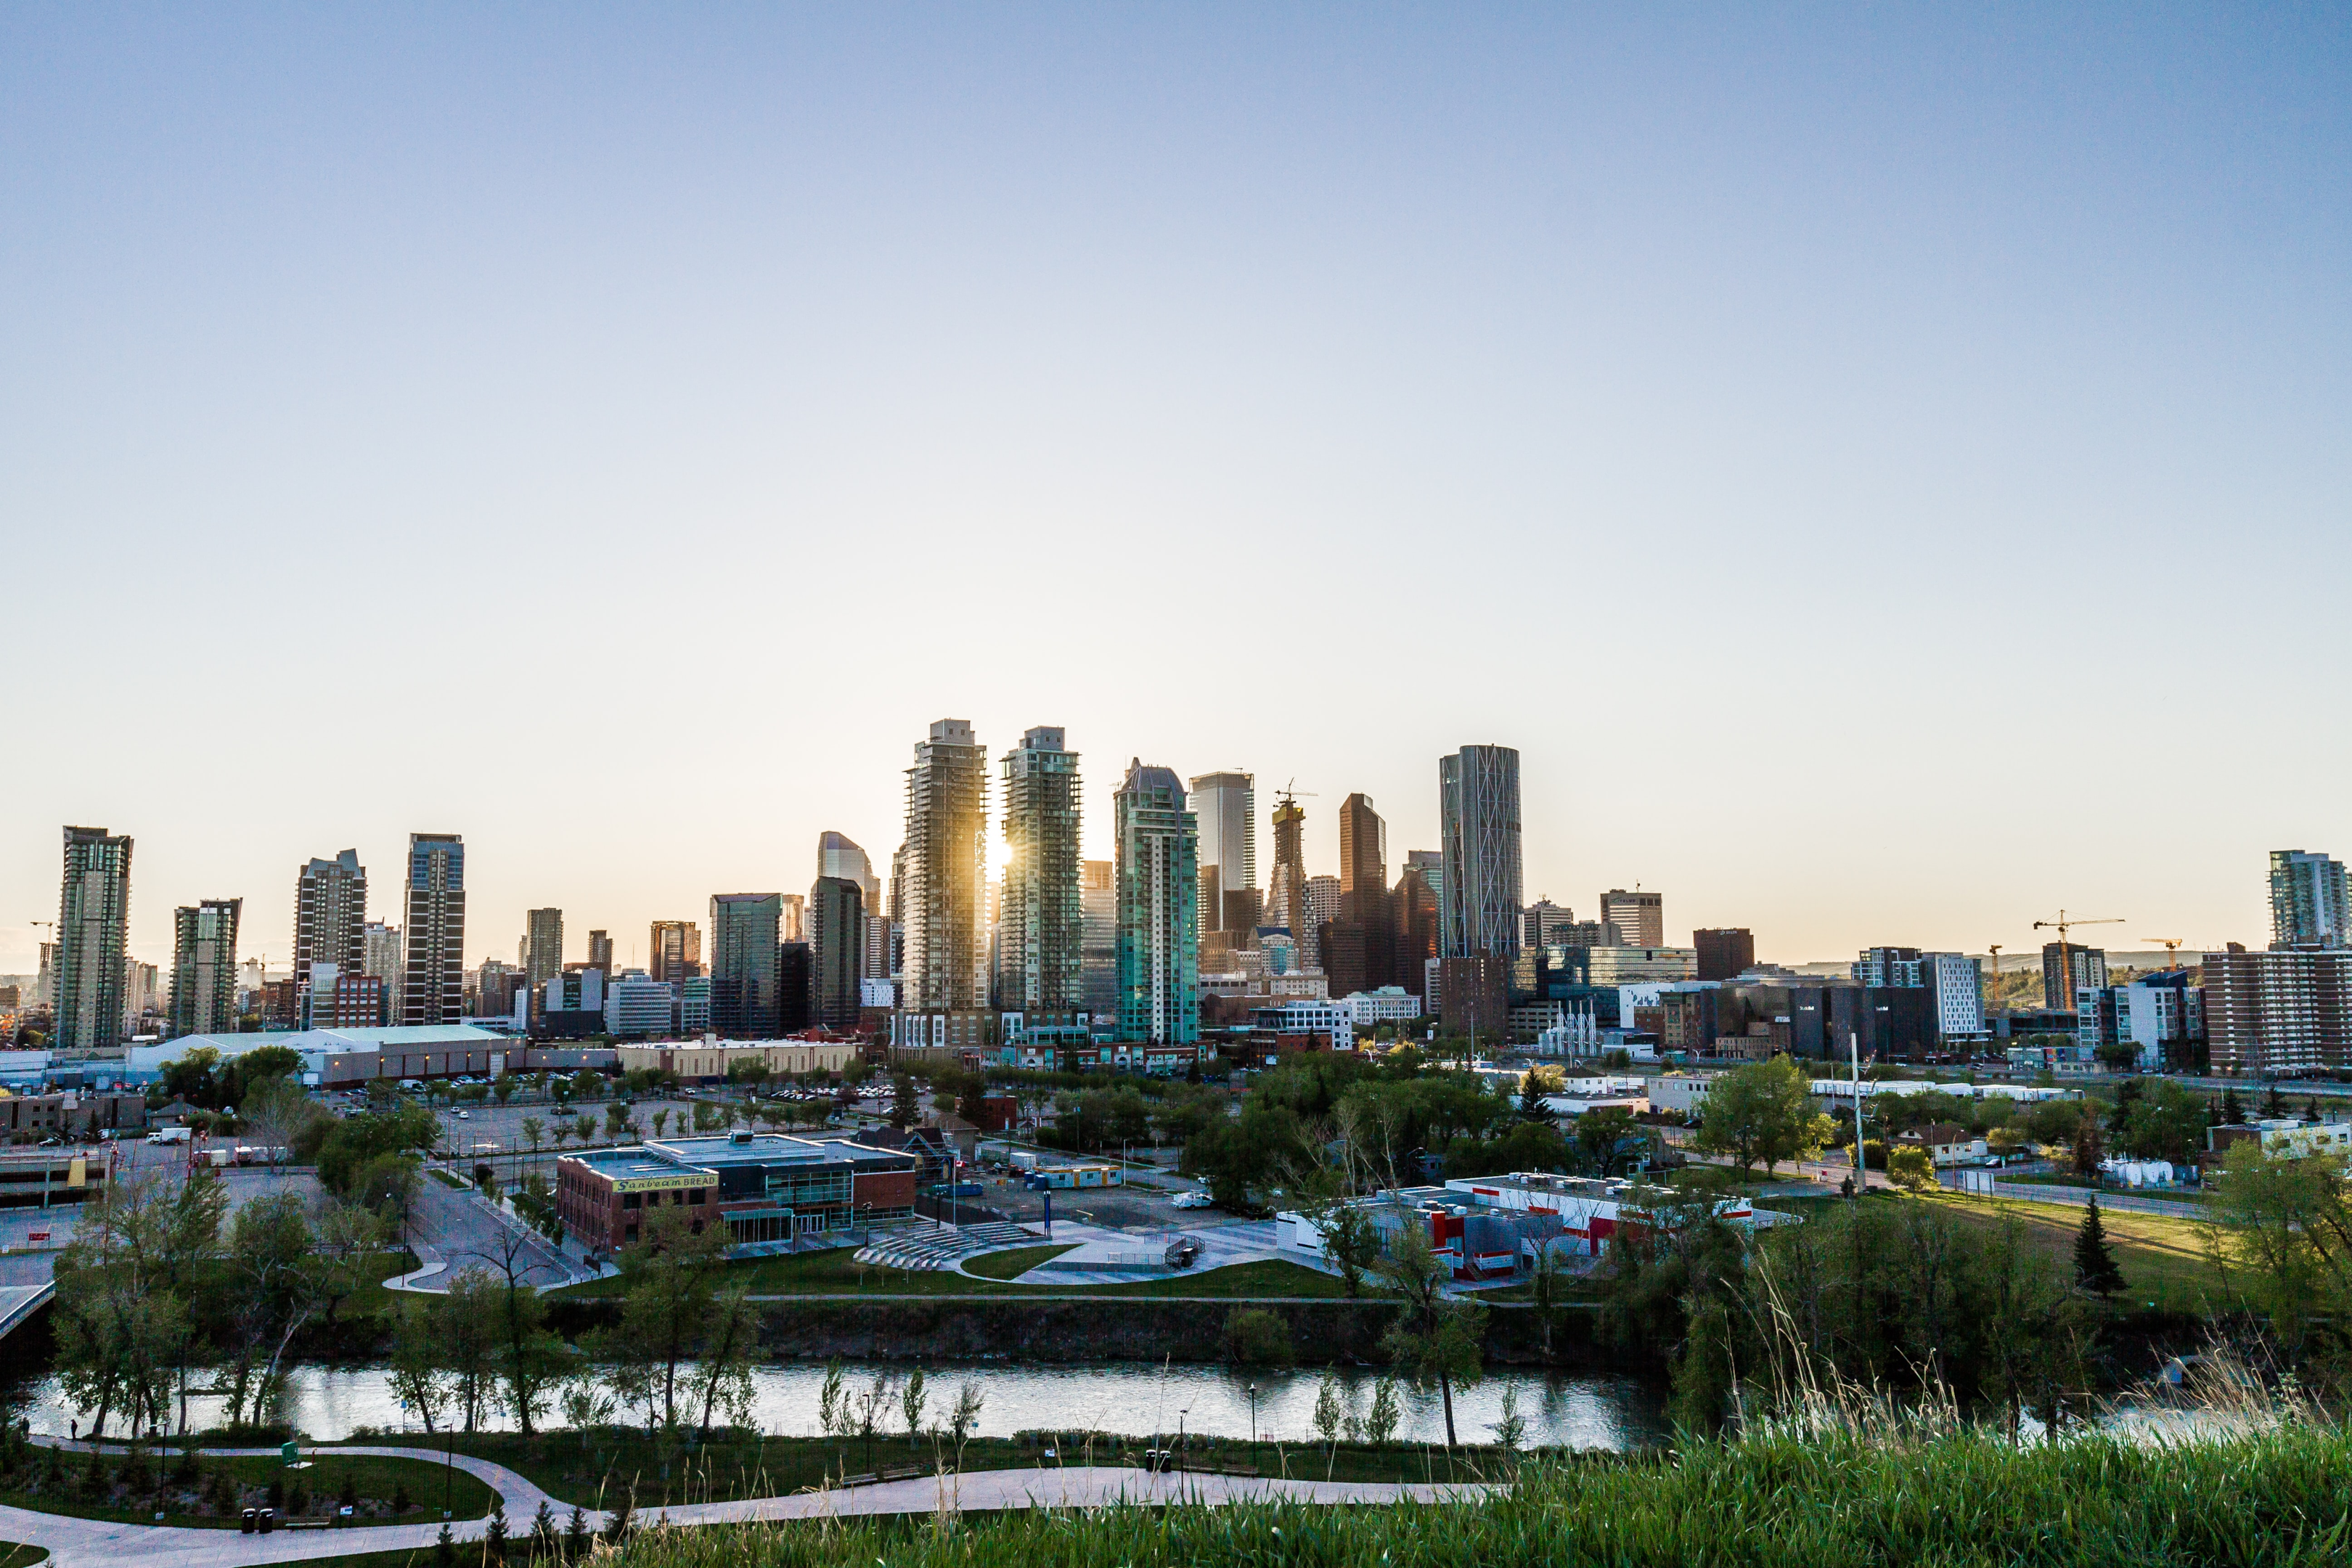 Calgary, Alberta skyline views. Photo by Kyler Nixon.